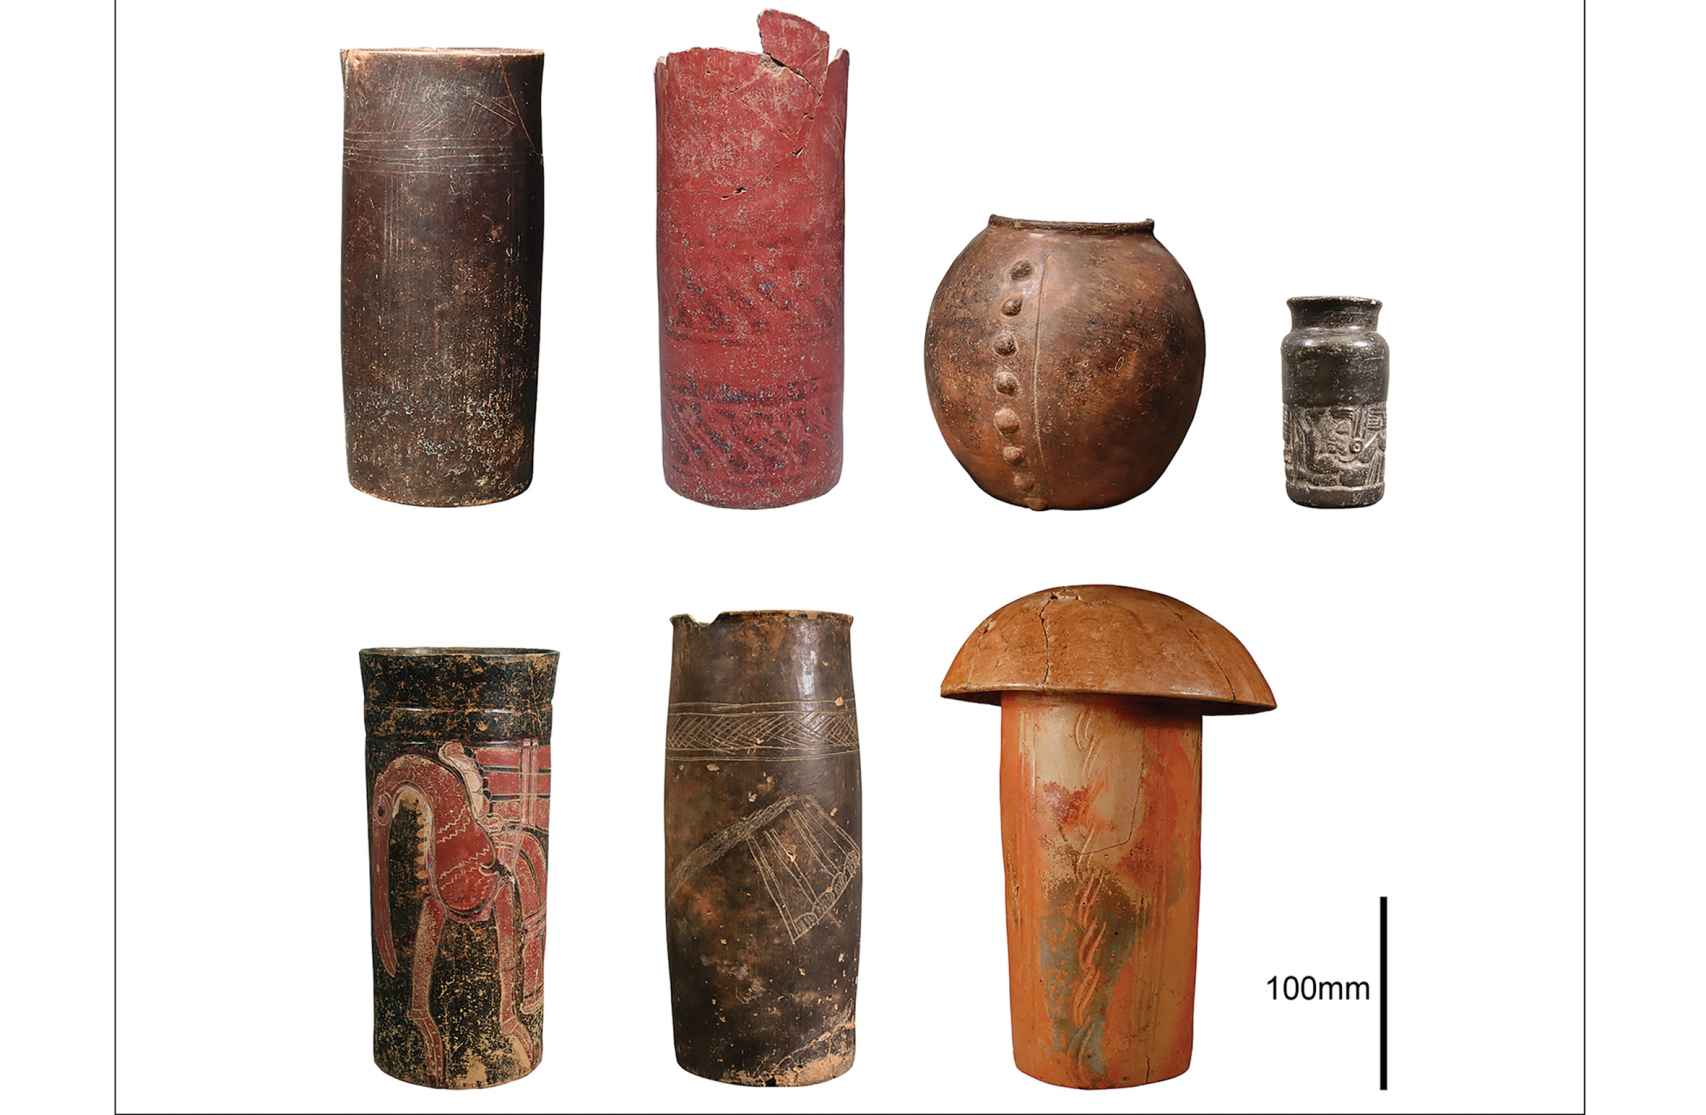 Los recipientes de cerámica examinados.